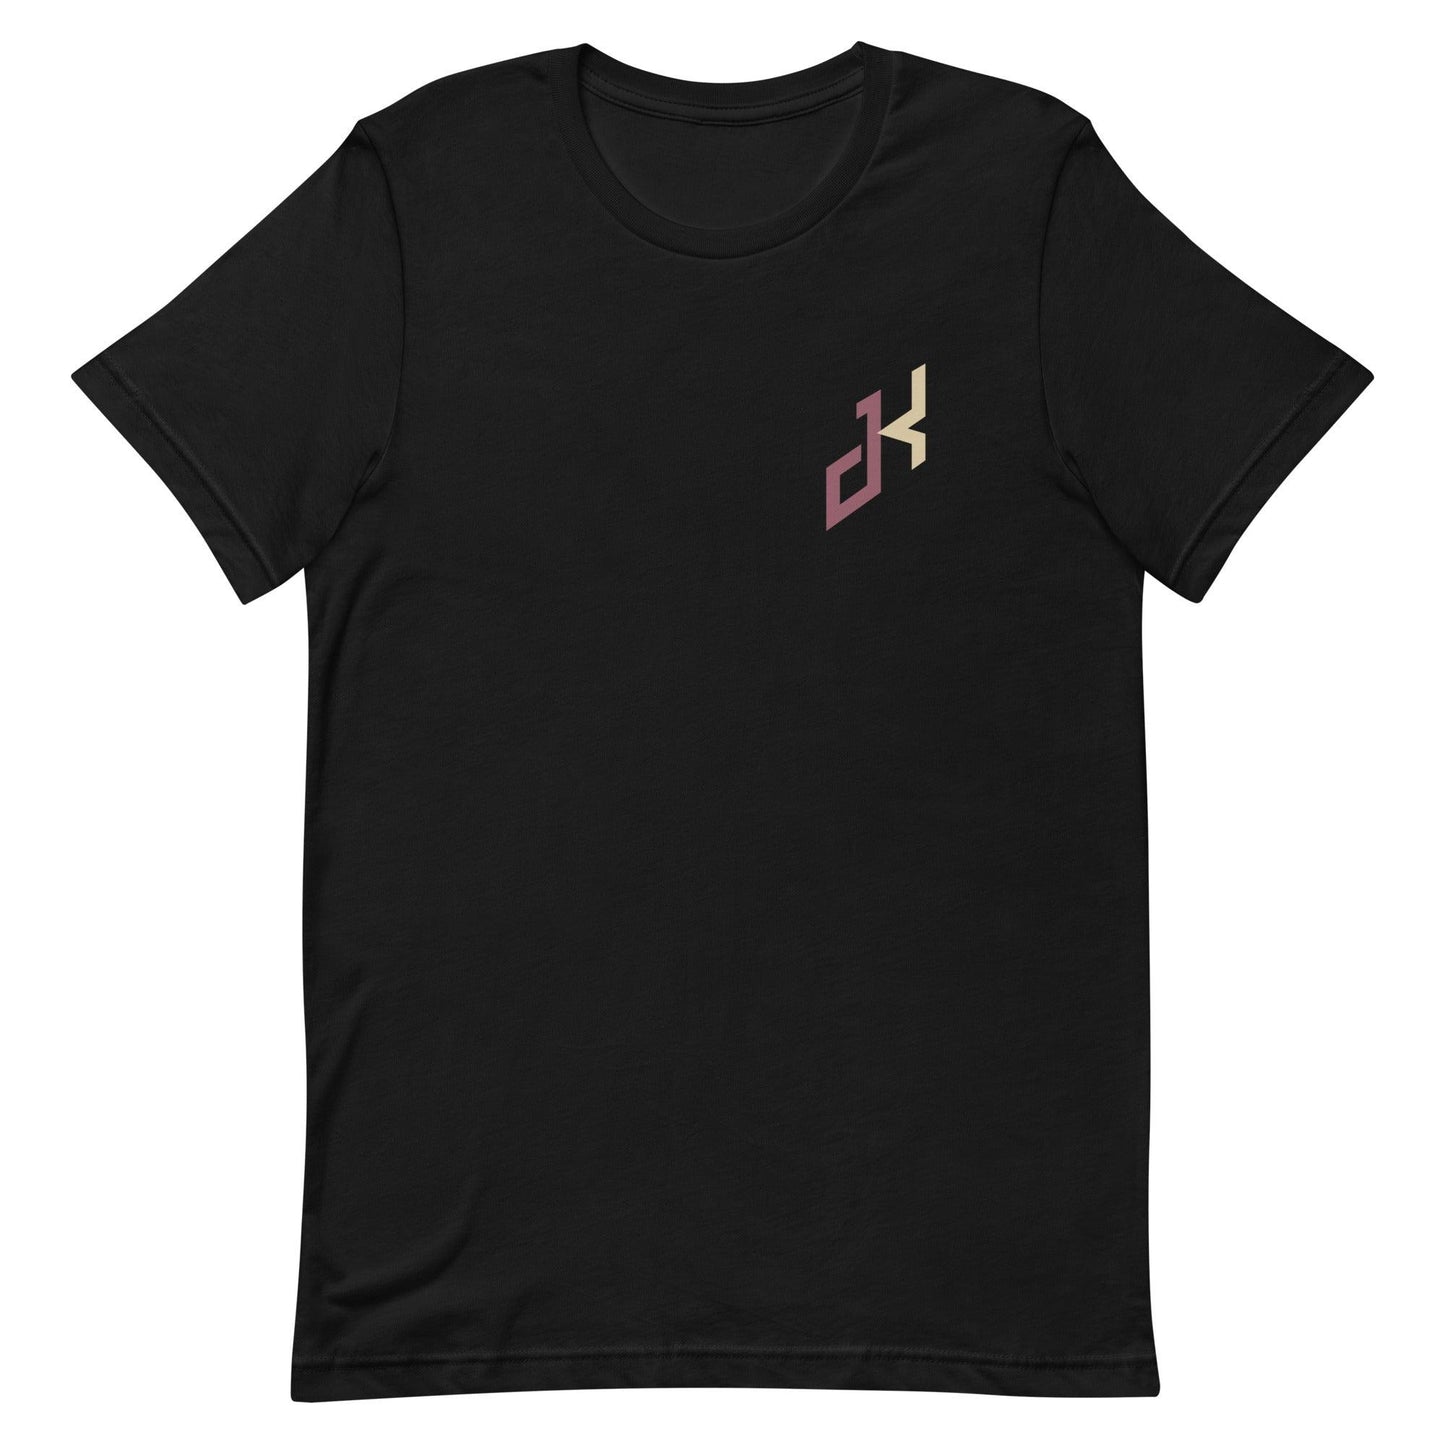 Jahni Kerr "Essential" t-shirt - Fan Arch